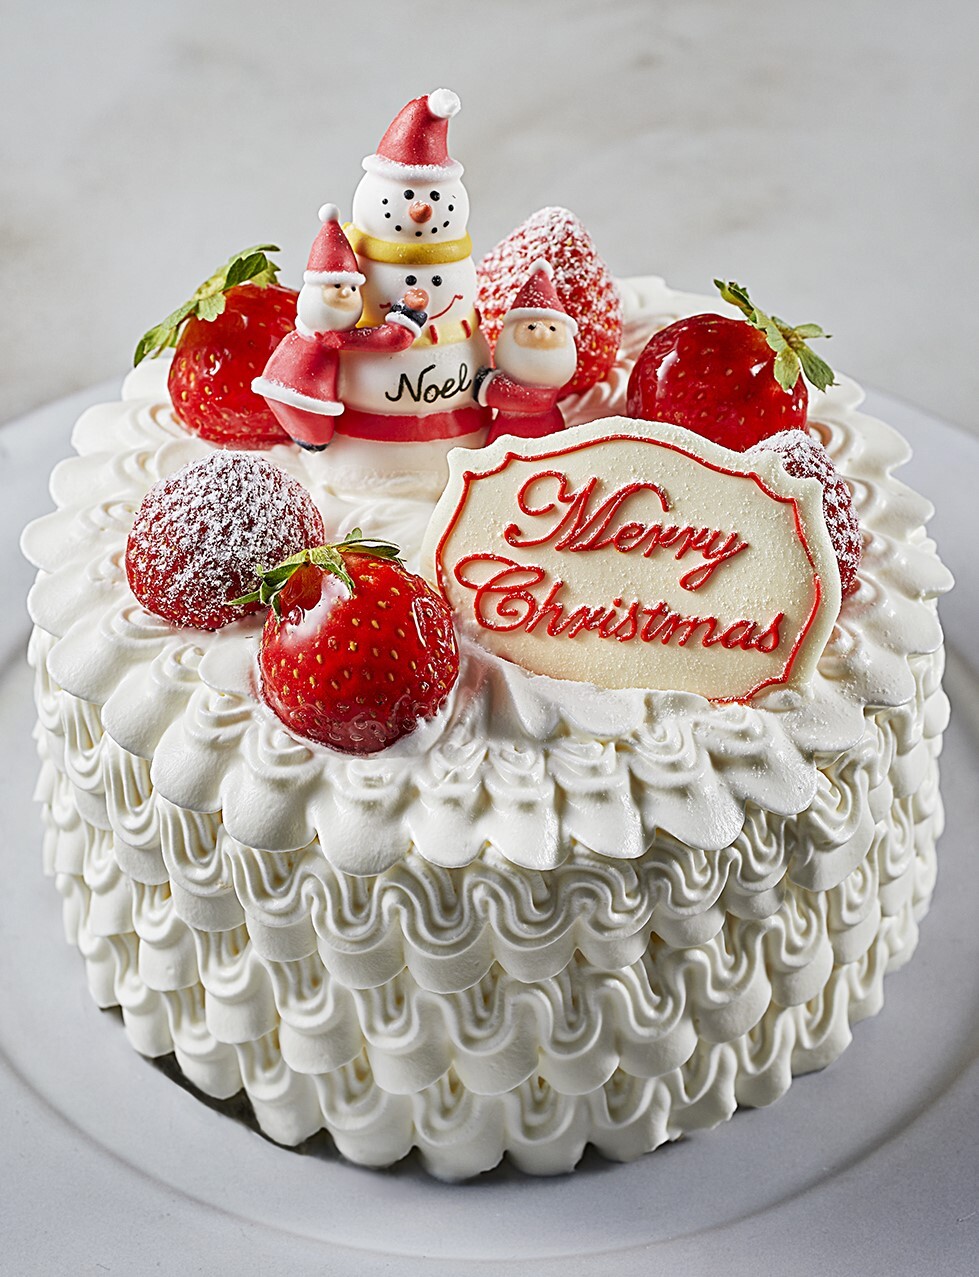 Withコロナ時代 おうちクリスマス を彩るケーキが登場 大切な人と過ごすとっておきのクリスマス をテーマとしたクリスマスケーキ が11月1日 日 より予約受付開始 株式会社アニバーサリーのプレスリリース